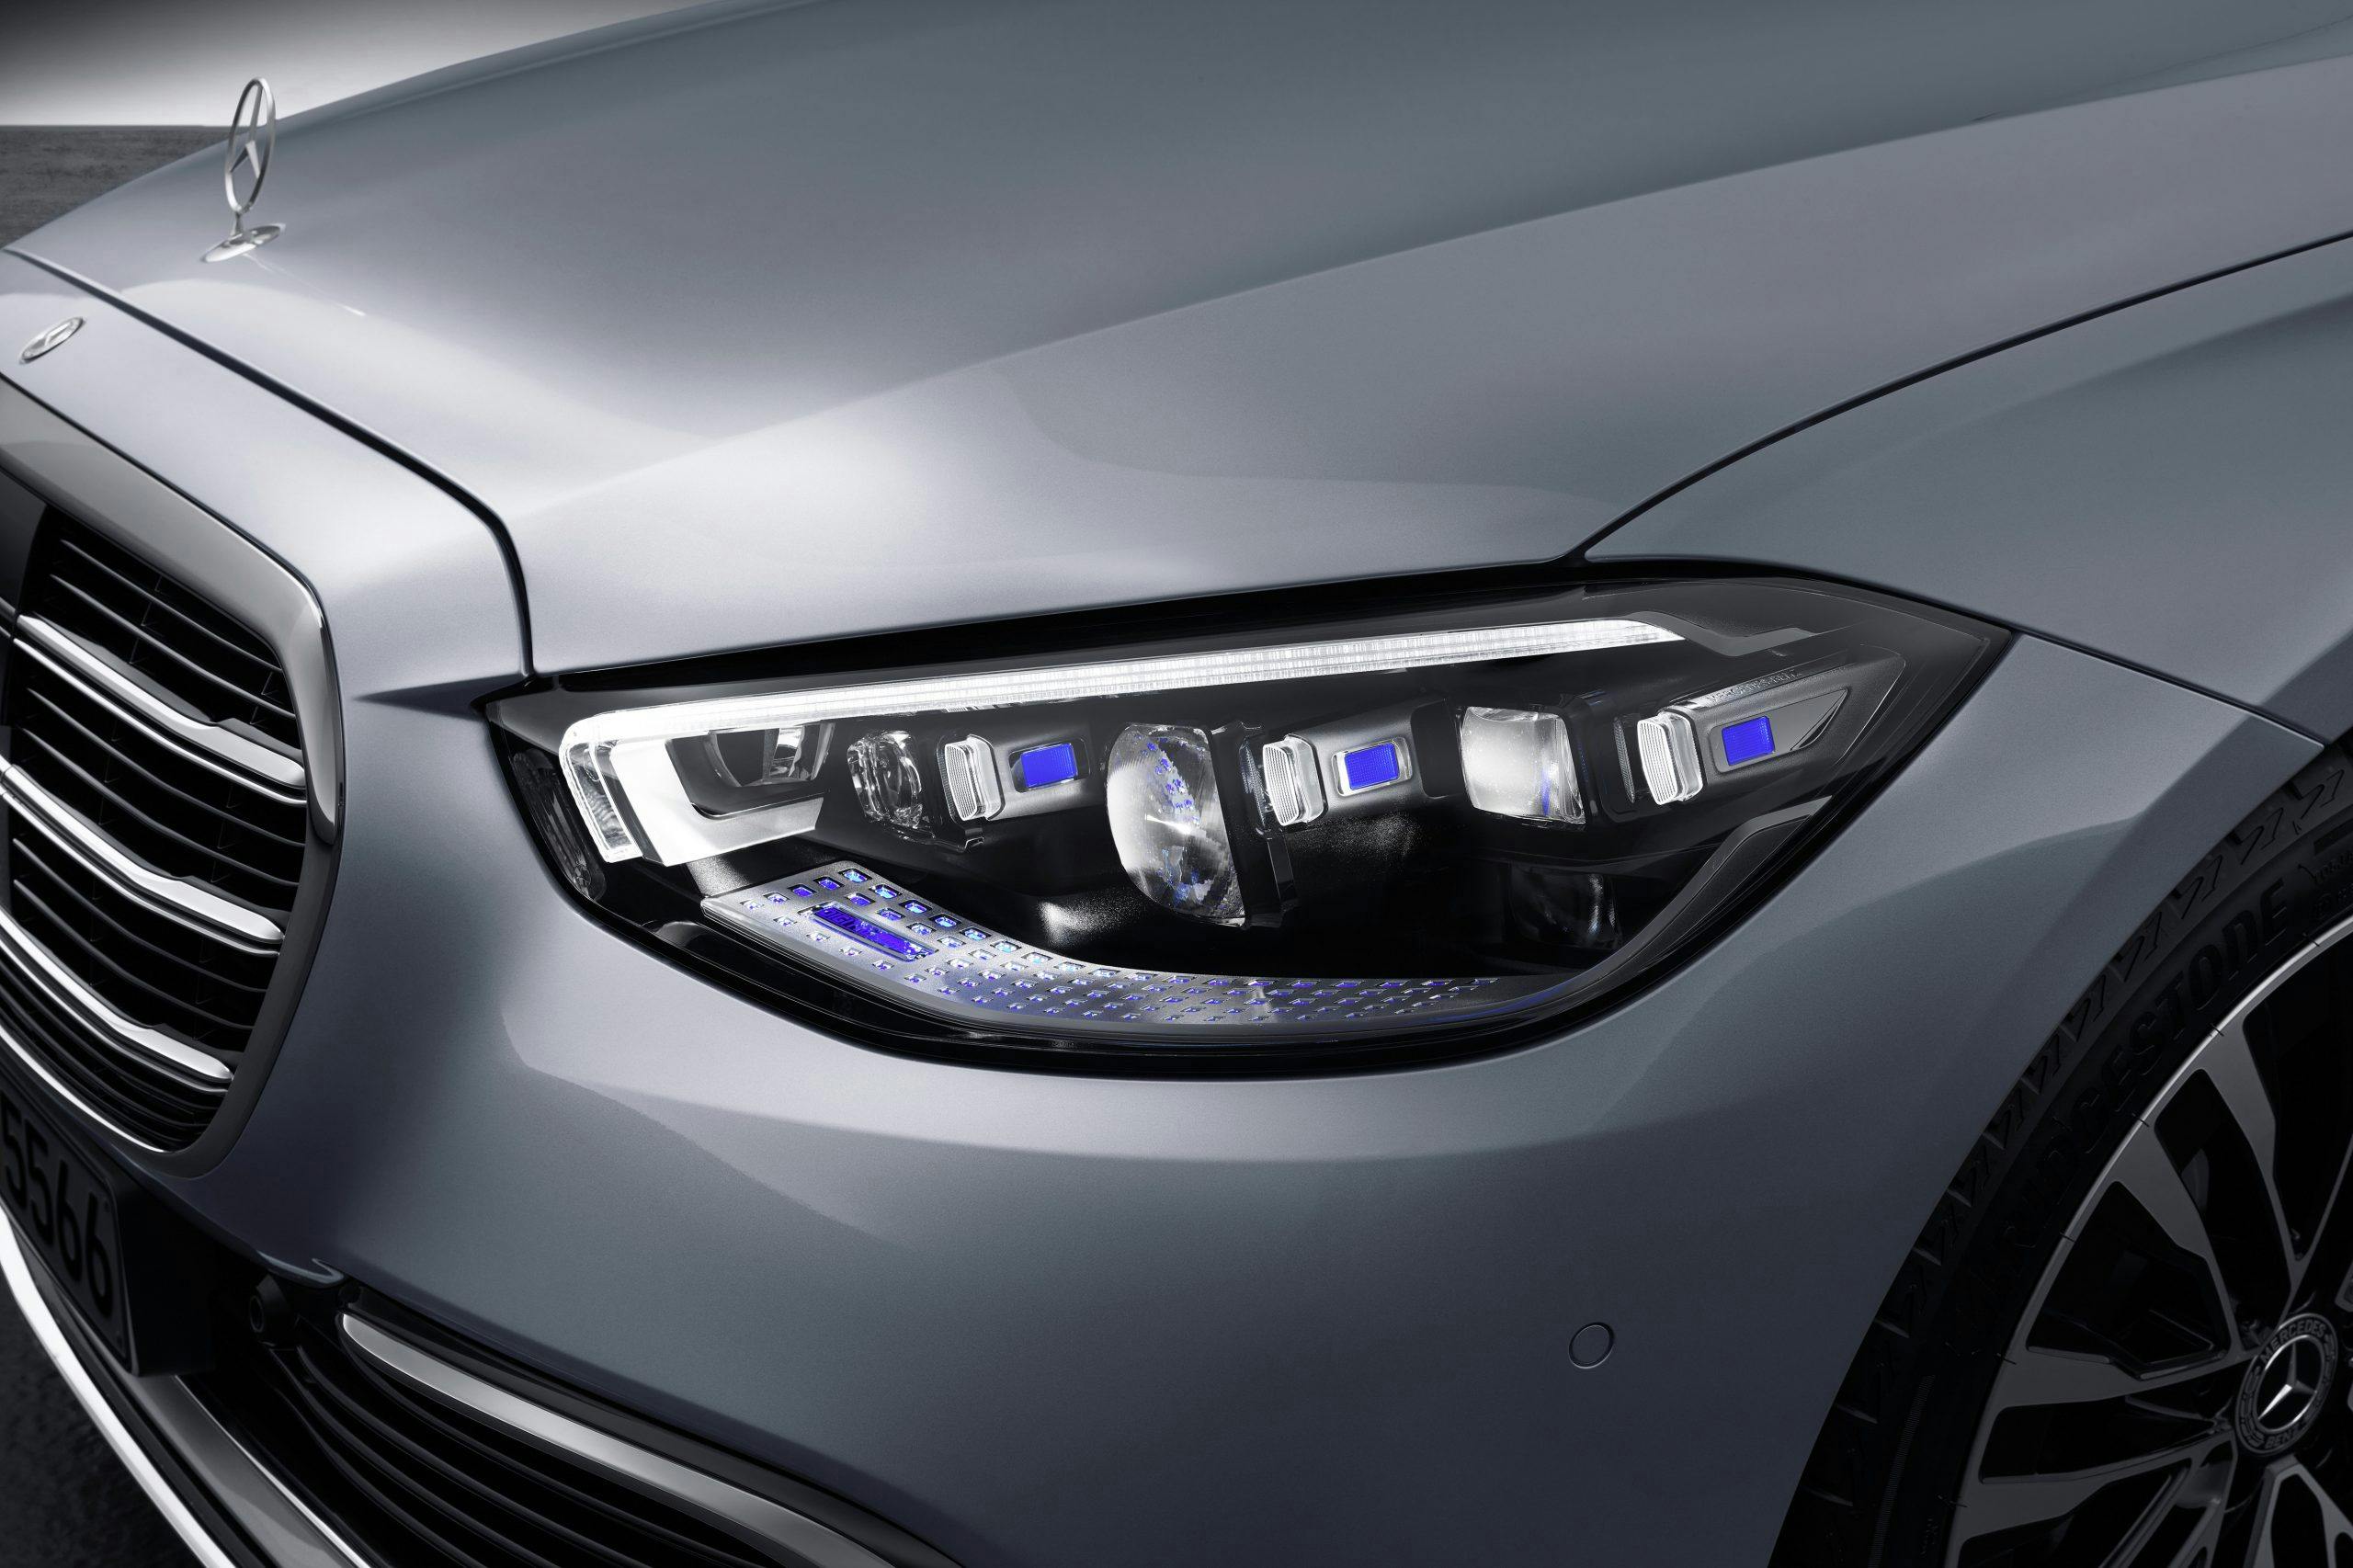 Mercedes-Benz S Class headlights